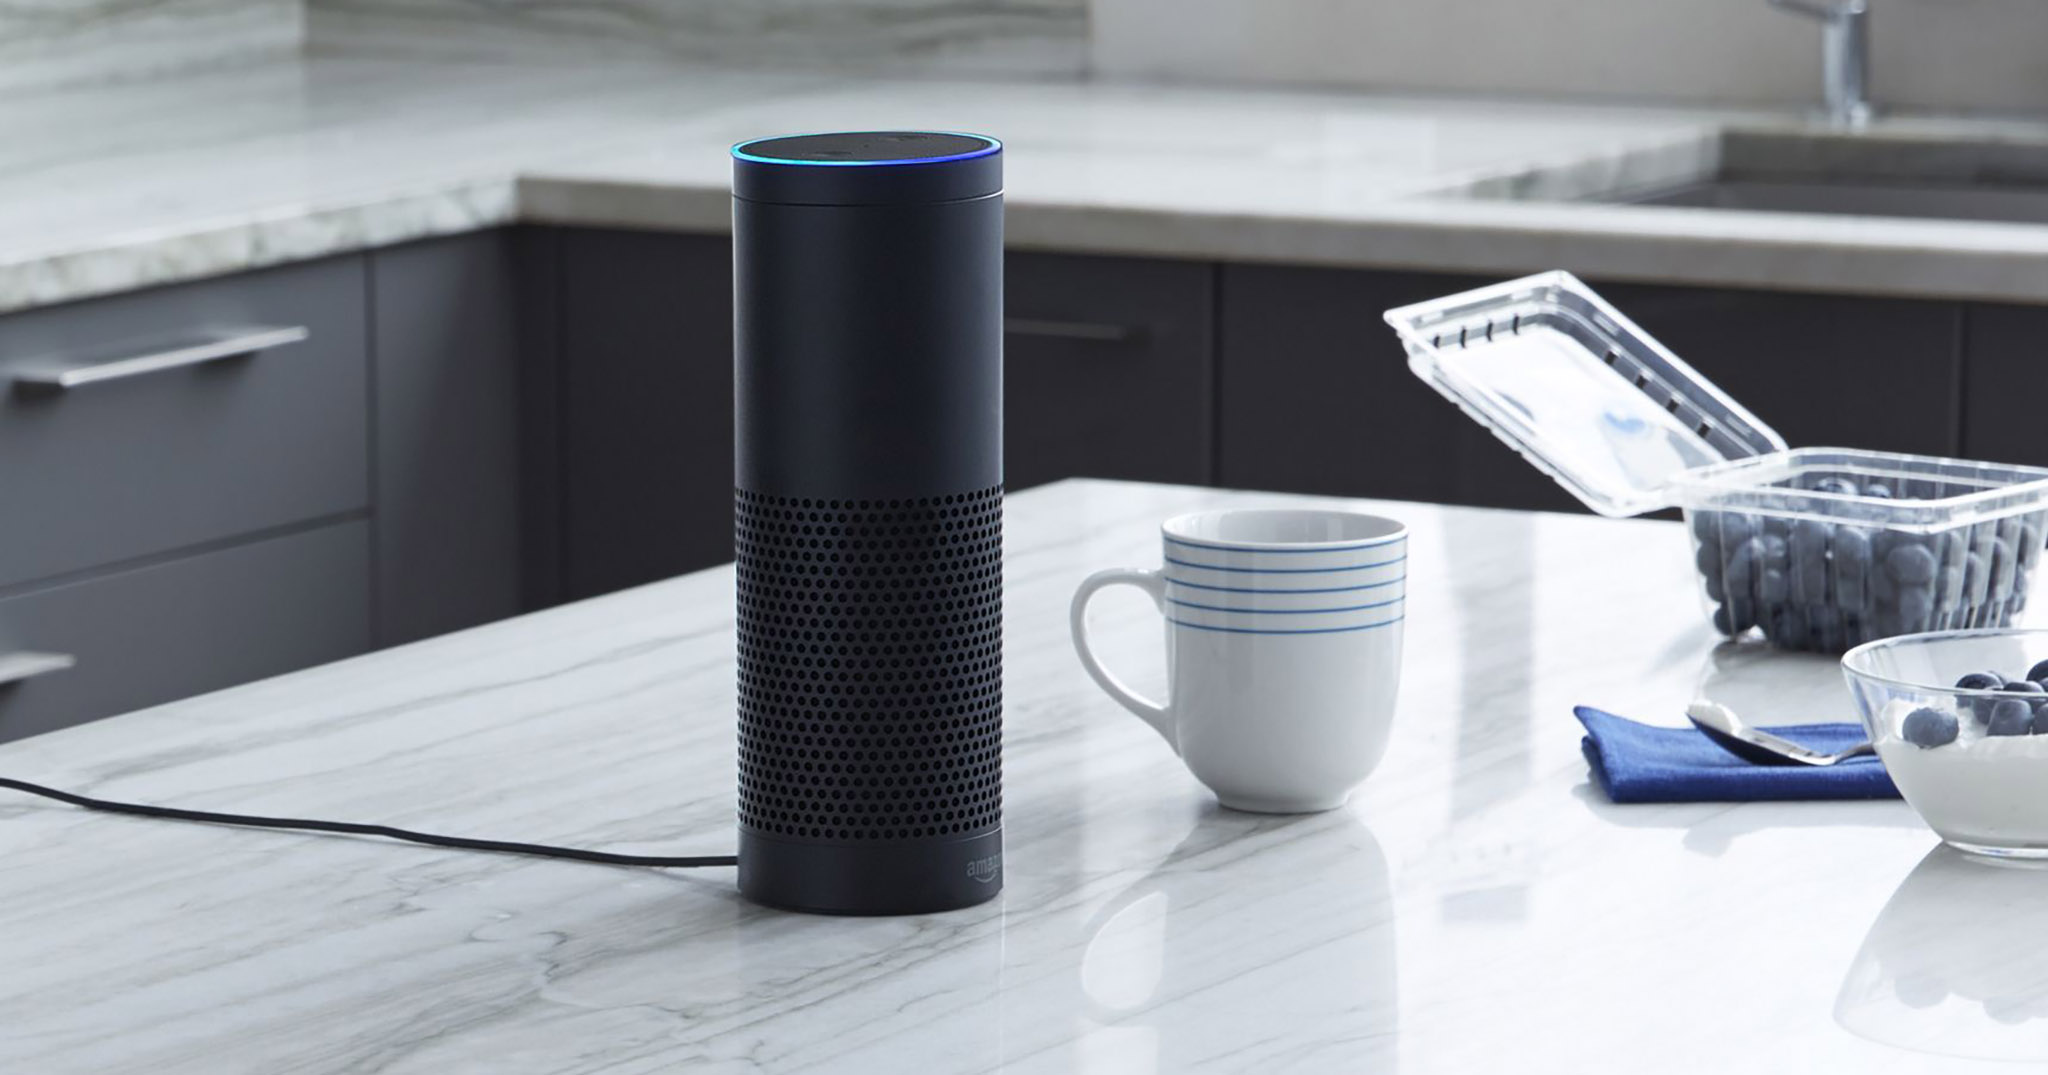 Alexa trên Amazon Echo tự ghi âm hội thoại, tự gởi cho người khác! Amazon nói chỉ là hy hữu